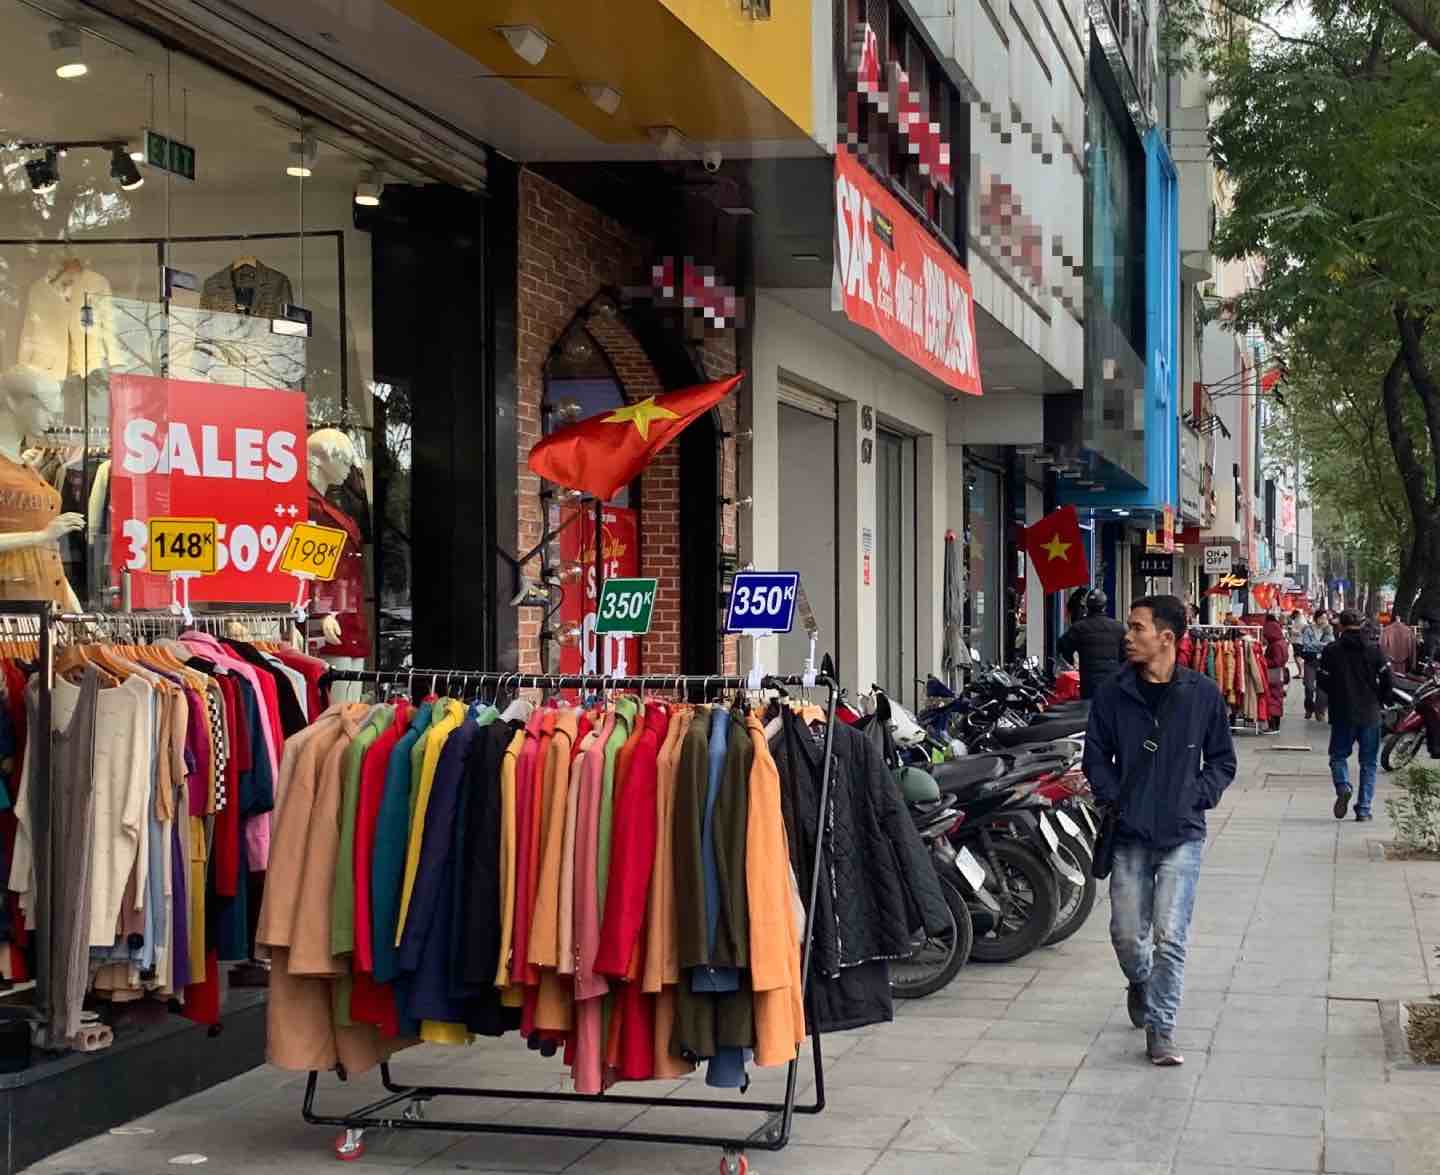 Cửa hàng đã bày quần áo ra ngoài vỉa hè nhằm thu hút sự chú ý của người đi đường. Ảnh: Nhật Minh